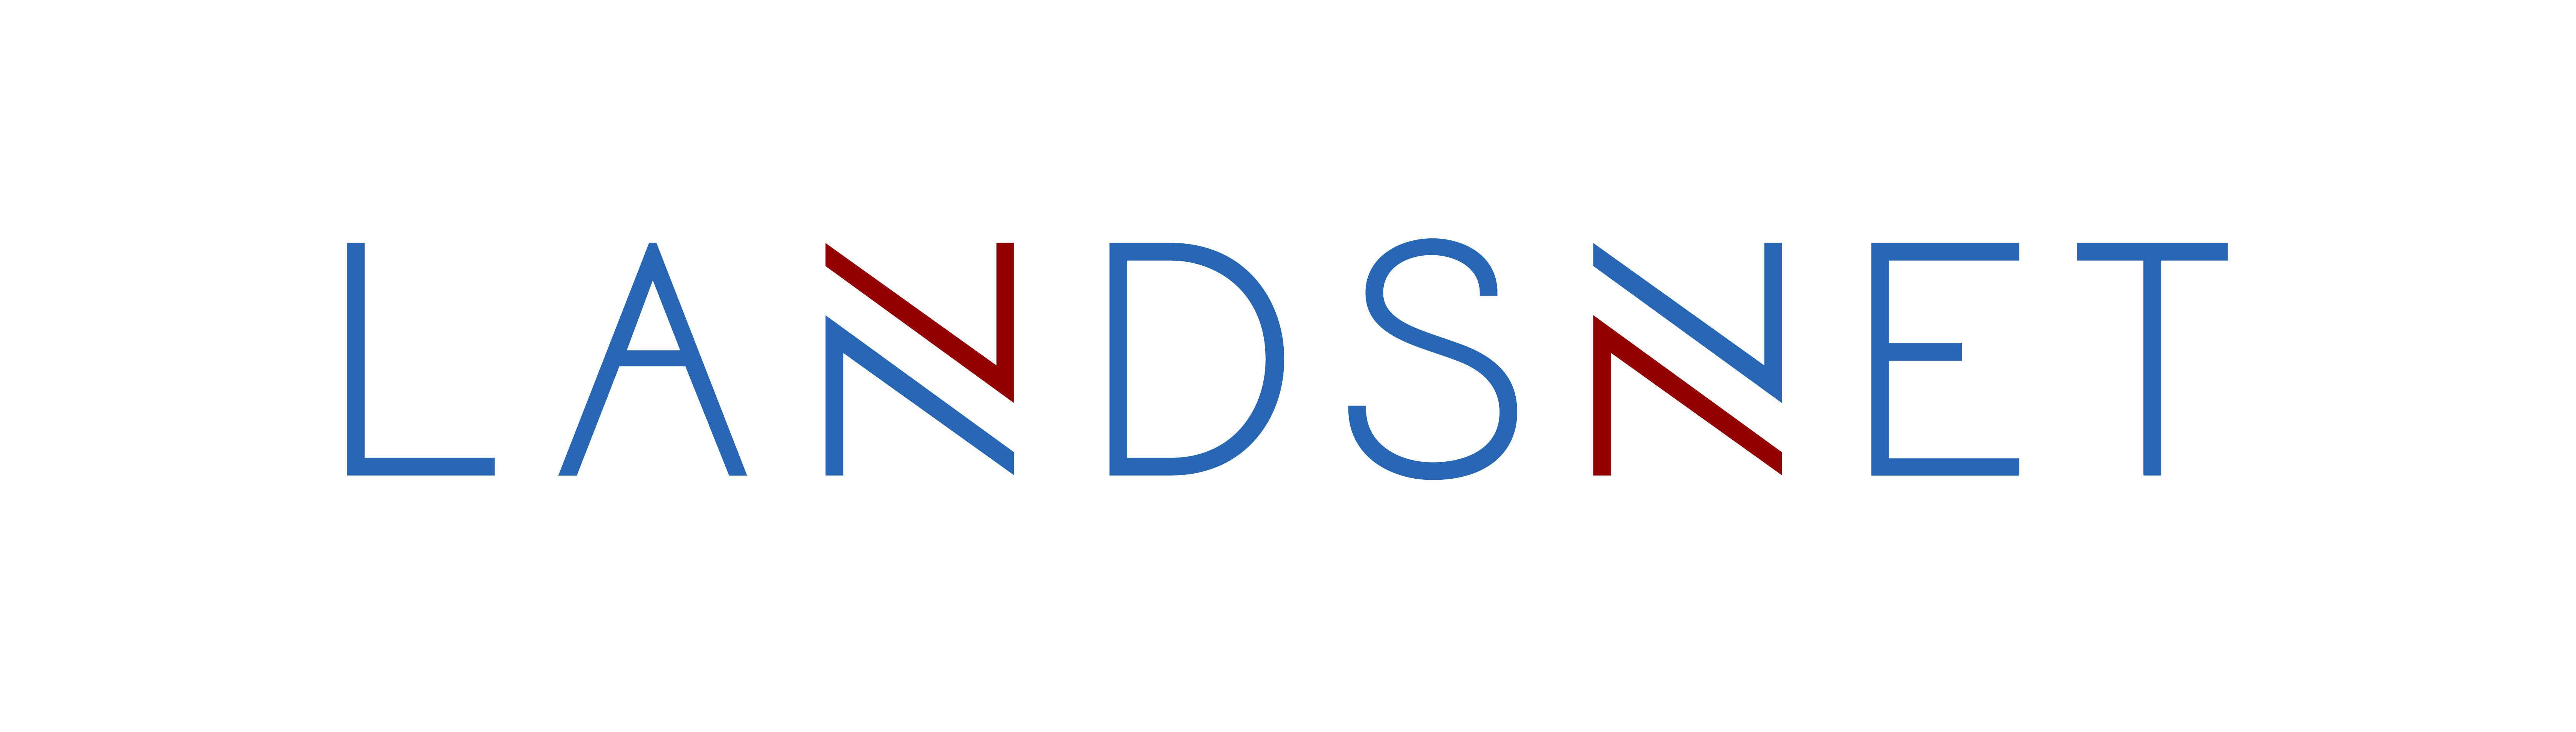 Logo-Landsnet-HQ-stort-prent.jpg